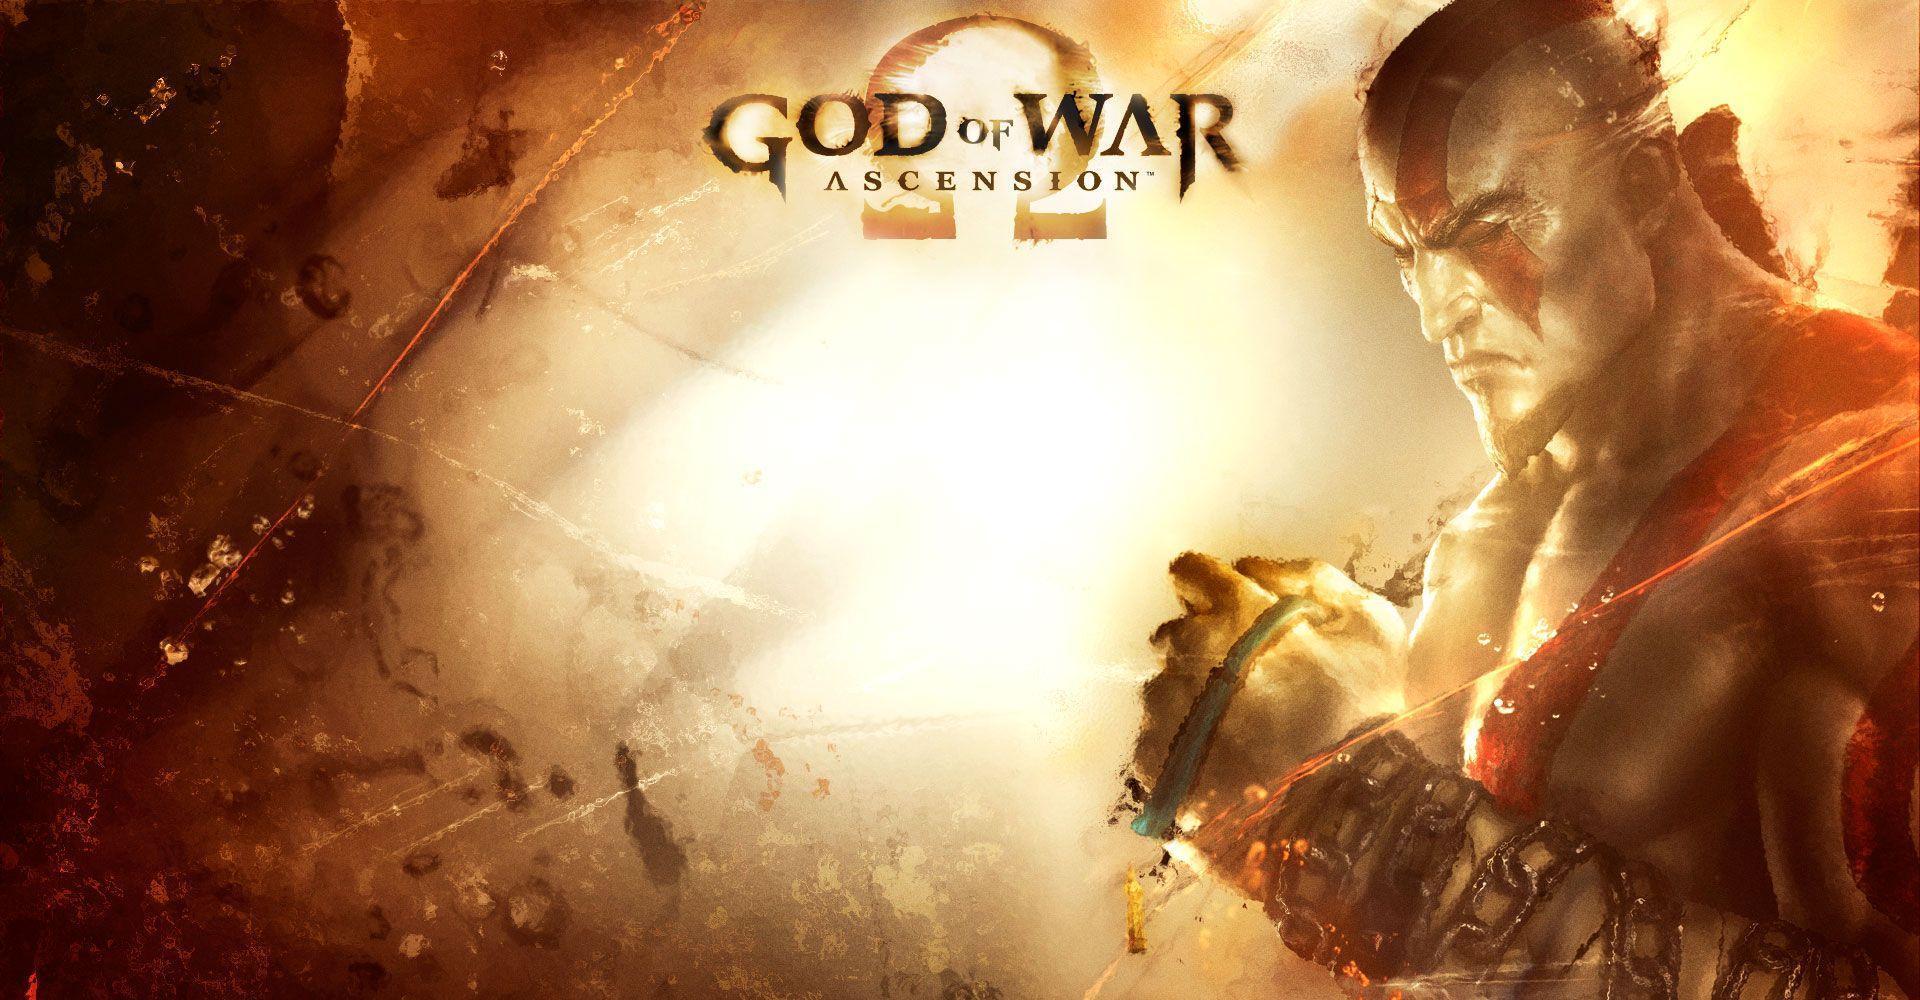 ULTIMATE GOD OF WAR: ASCENSION WALLPAPER